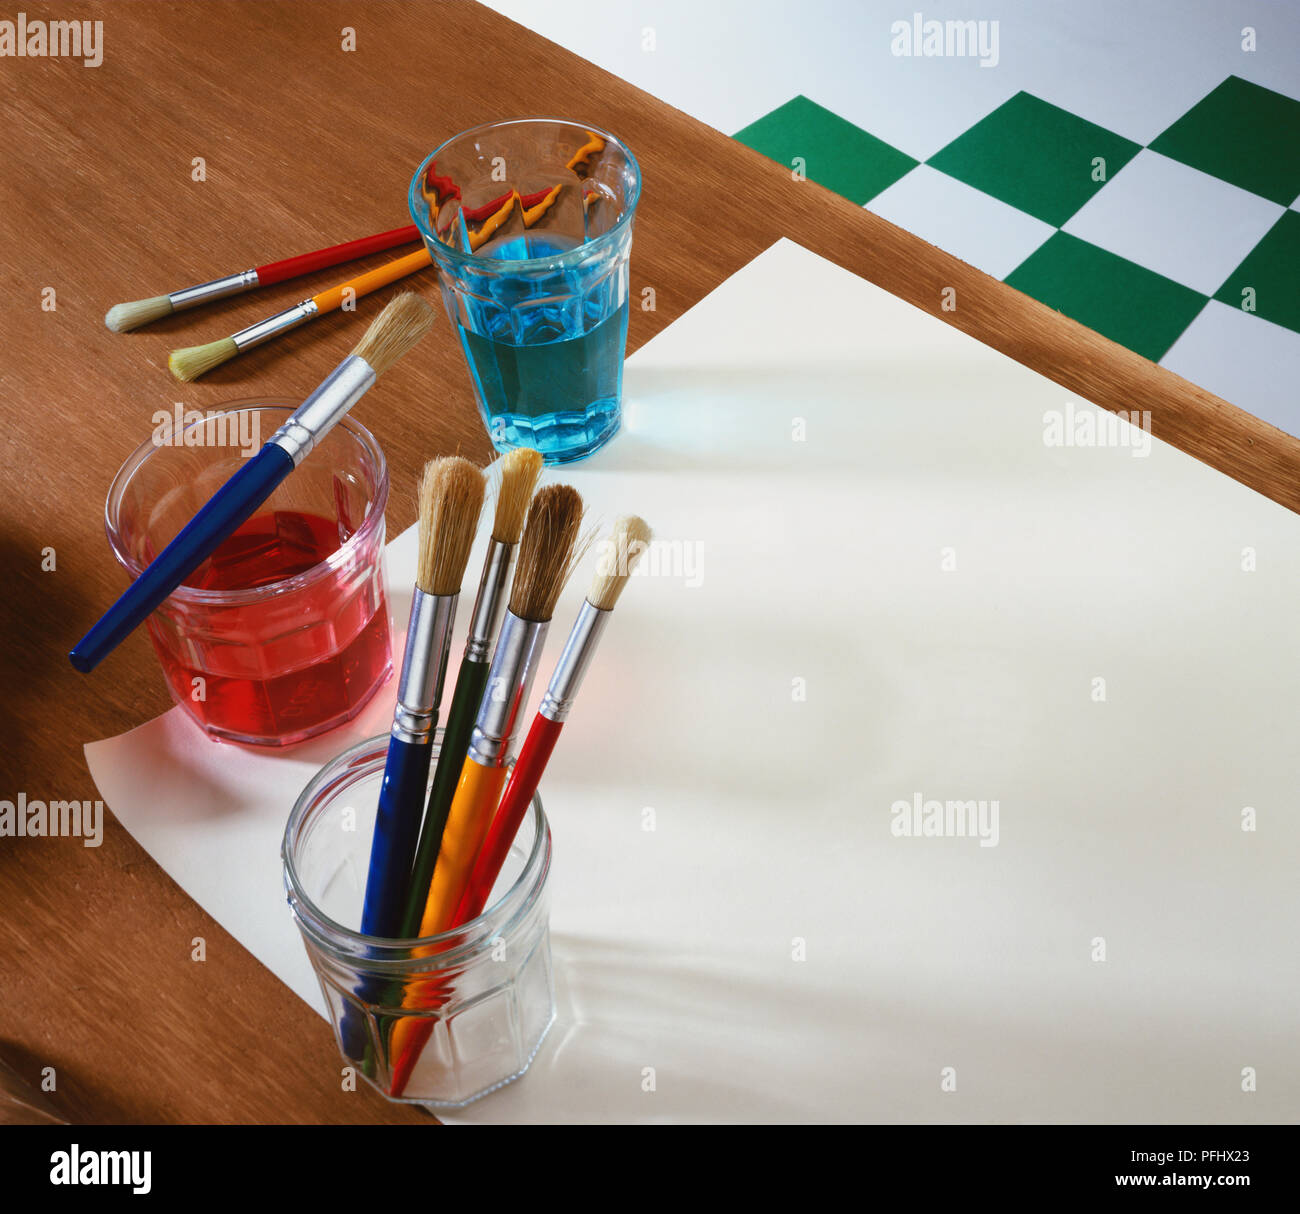 Assortiment de pinceaux dans un bocal en verre à côté de verres de couleur rouge et bleu de l'eau, feuille de papier sur la table. Banque D'Images